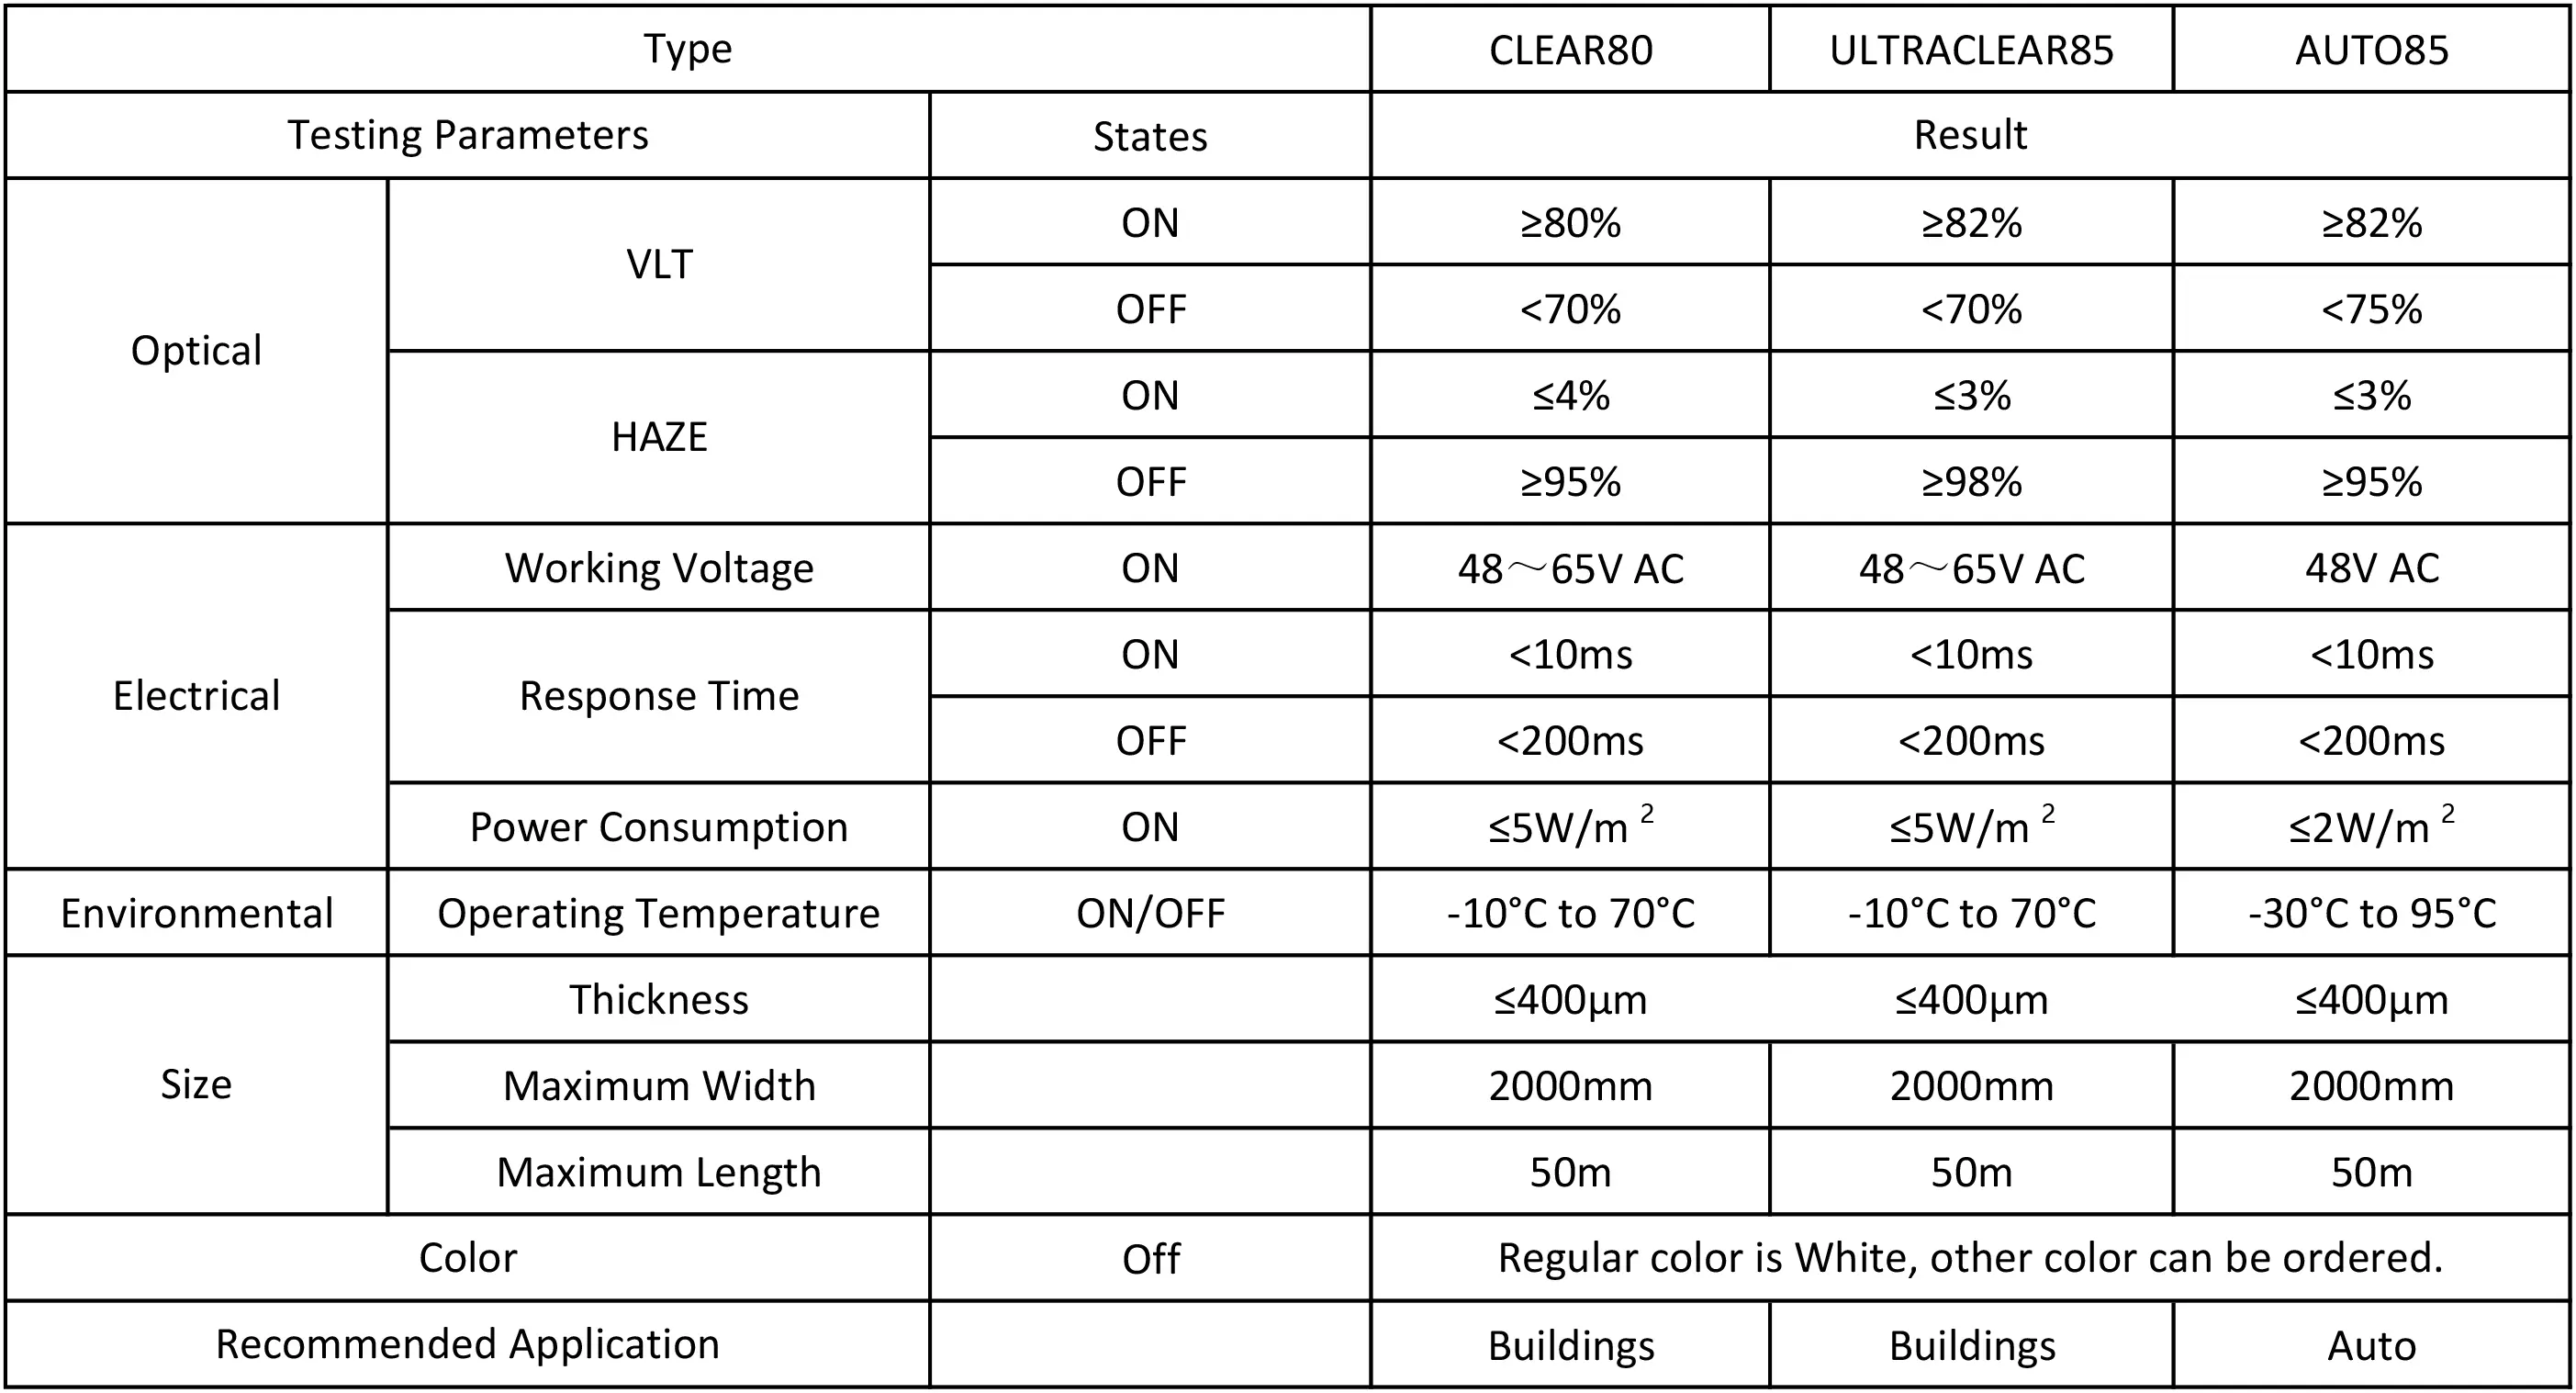 ออปติคัล VLT-ON≥80% VLT-OFF <70% HAZE-ON ≤4% HAZE-OFF≥95% แรงดันไฟฟ้าที่ใช้งานได้ 65VAC เวลาตอบสนอง <10ms การใช้พลังงาน-ON≤5W / m2 เปิด / ปิดอุณหภูมิในการทำงาน -10 ° C ถึง 70°C ความหนา≤400μm ความกว้างสูงสุด:2000 มม. ความยาวสูงสุด:50 ม.